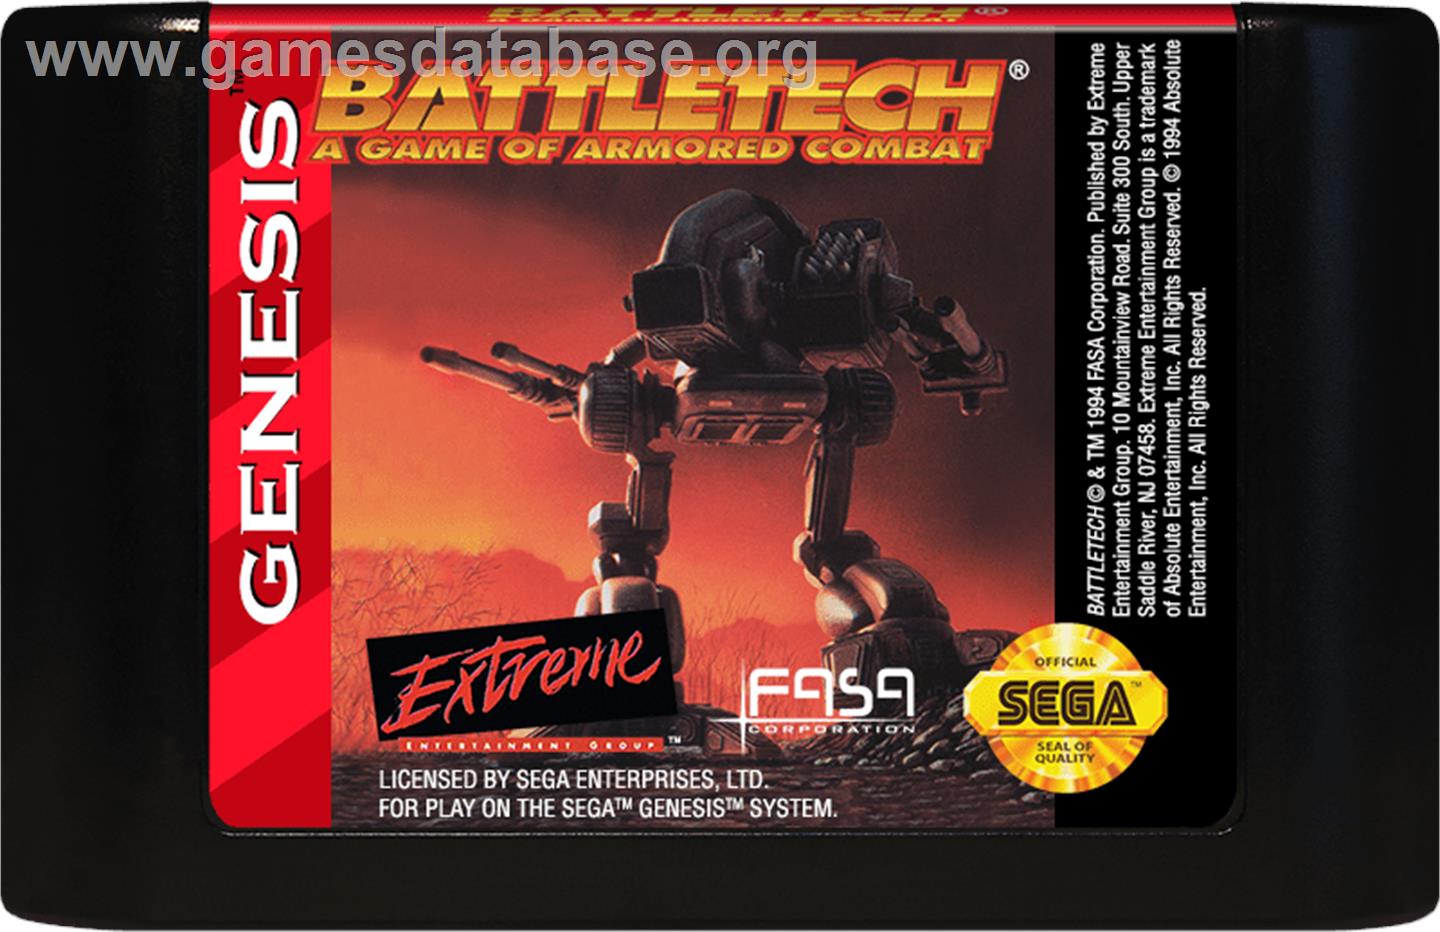 Battletech: A Game of Armored Combat - Sega Genesis - Artwork - Cartridge